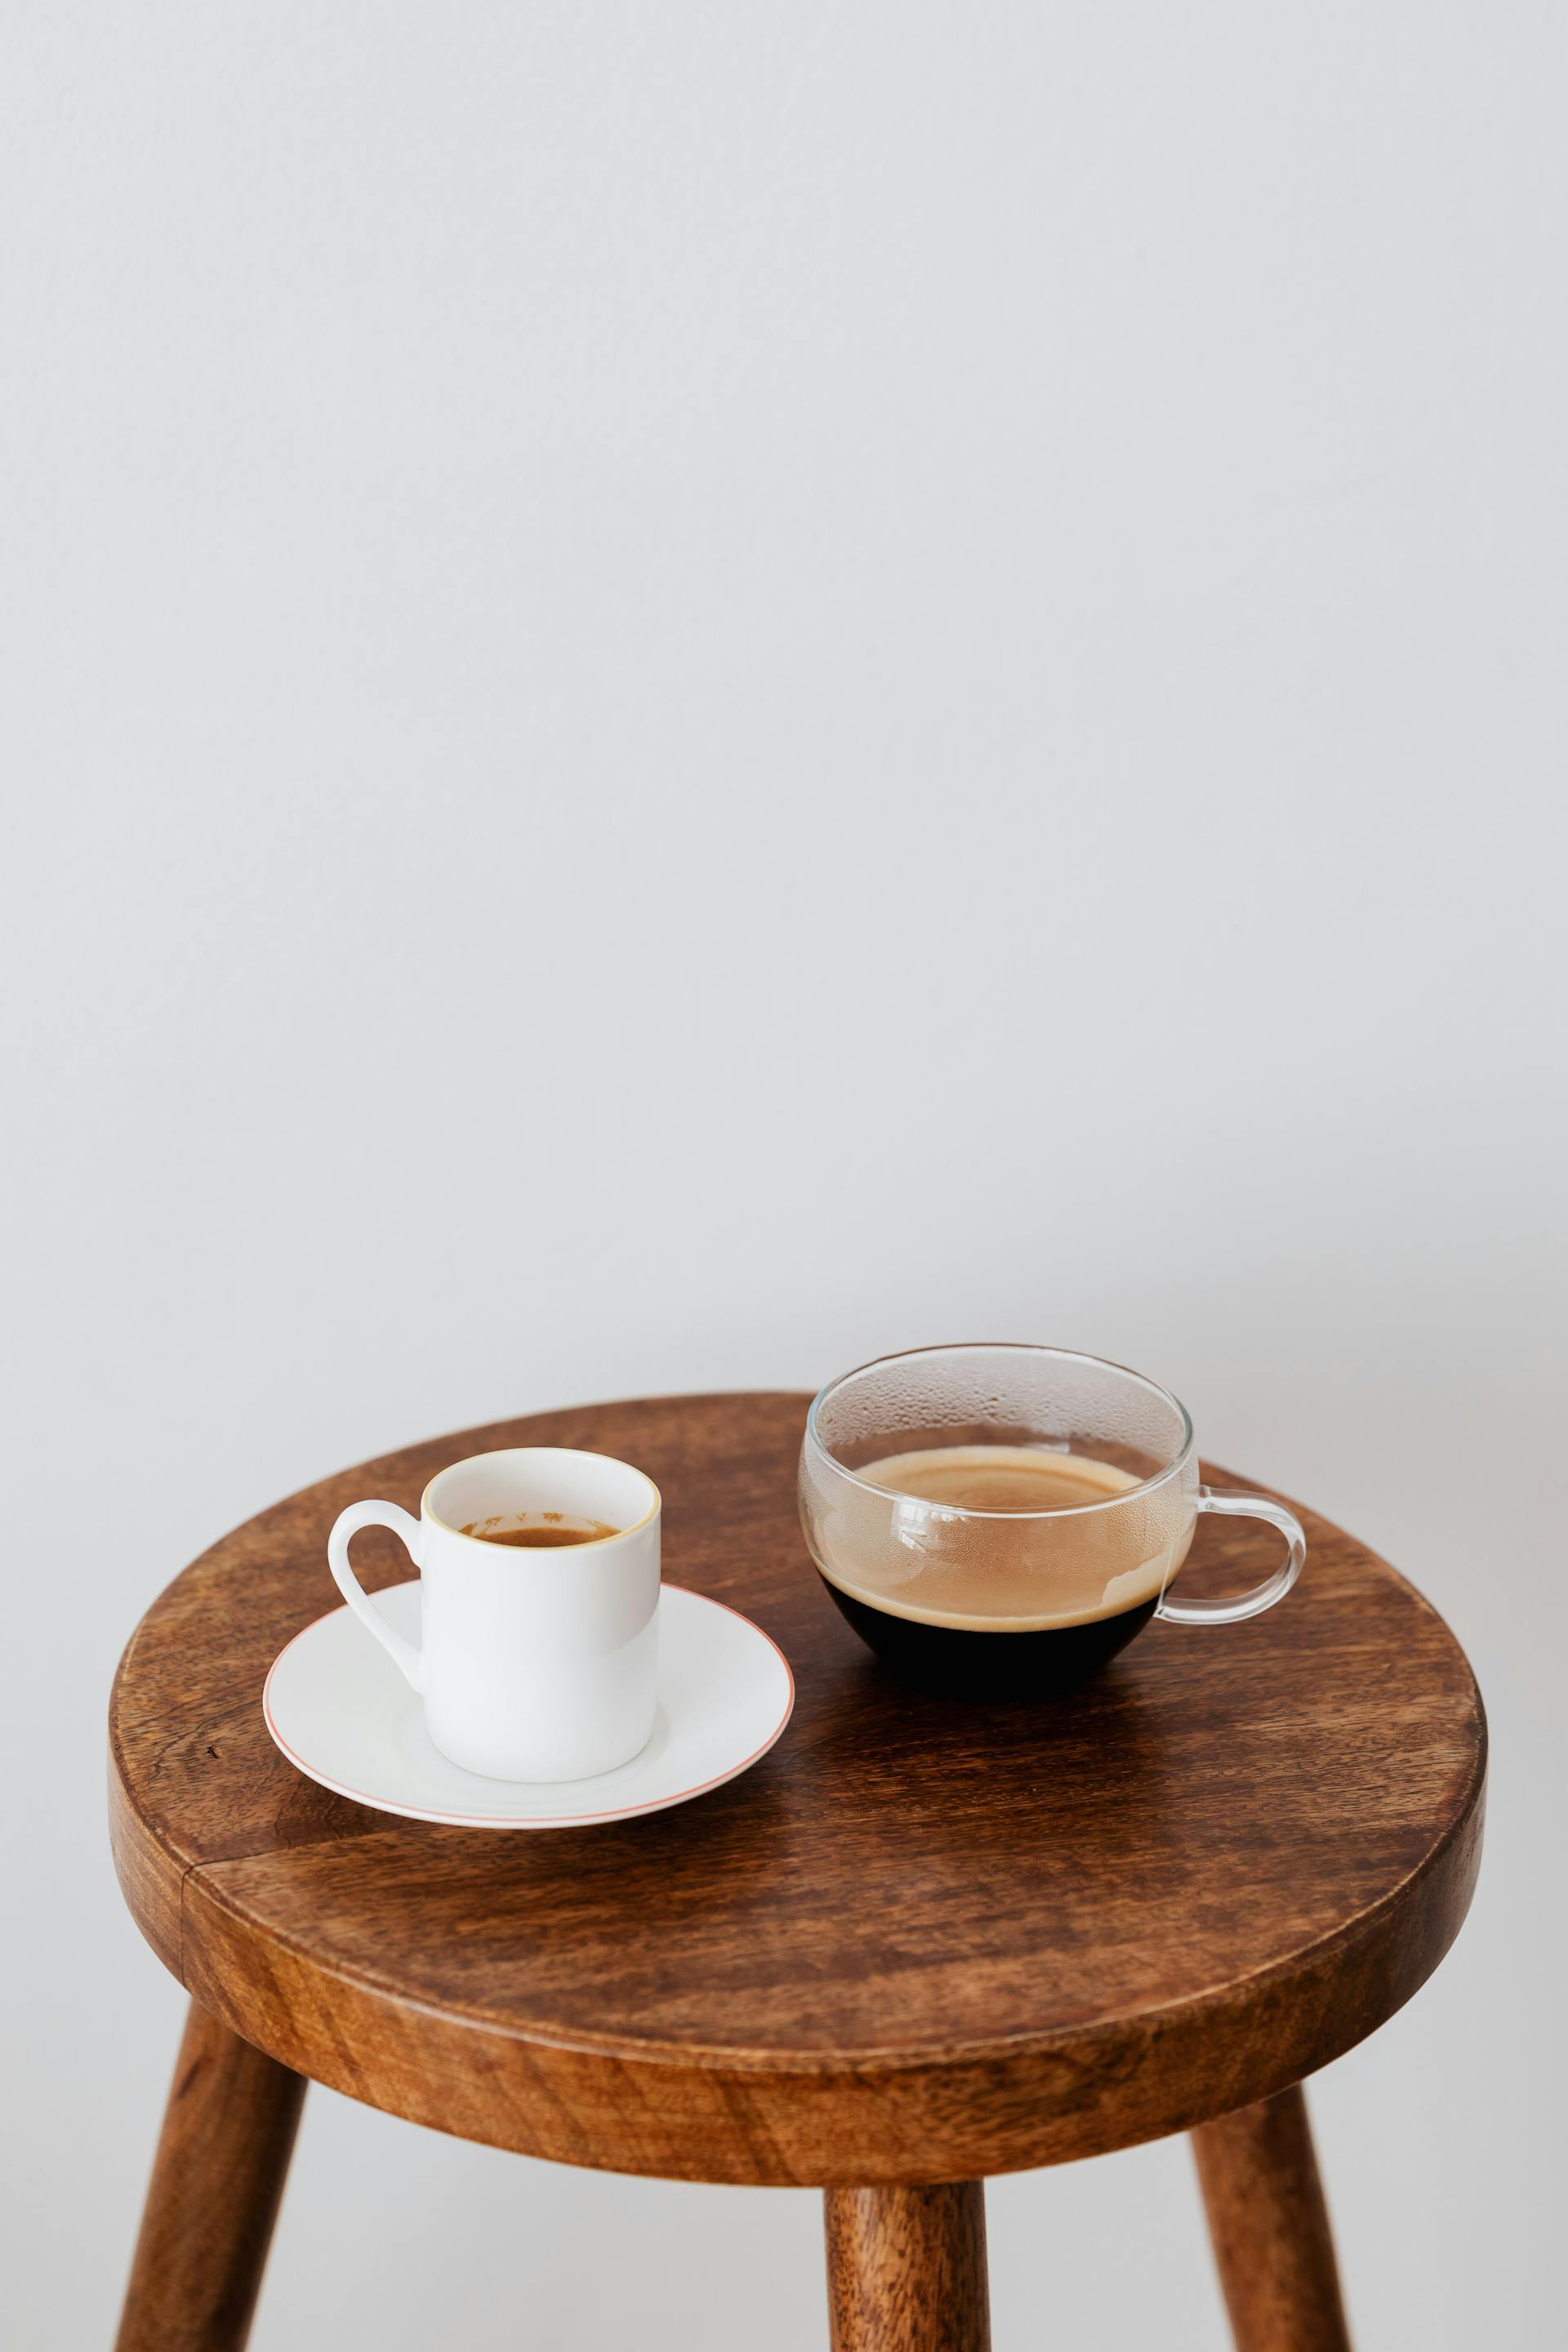 Tassen auf einem Tisch | Quelle: Pexels